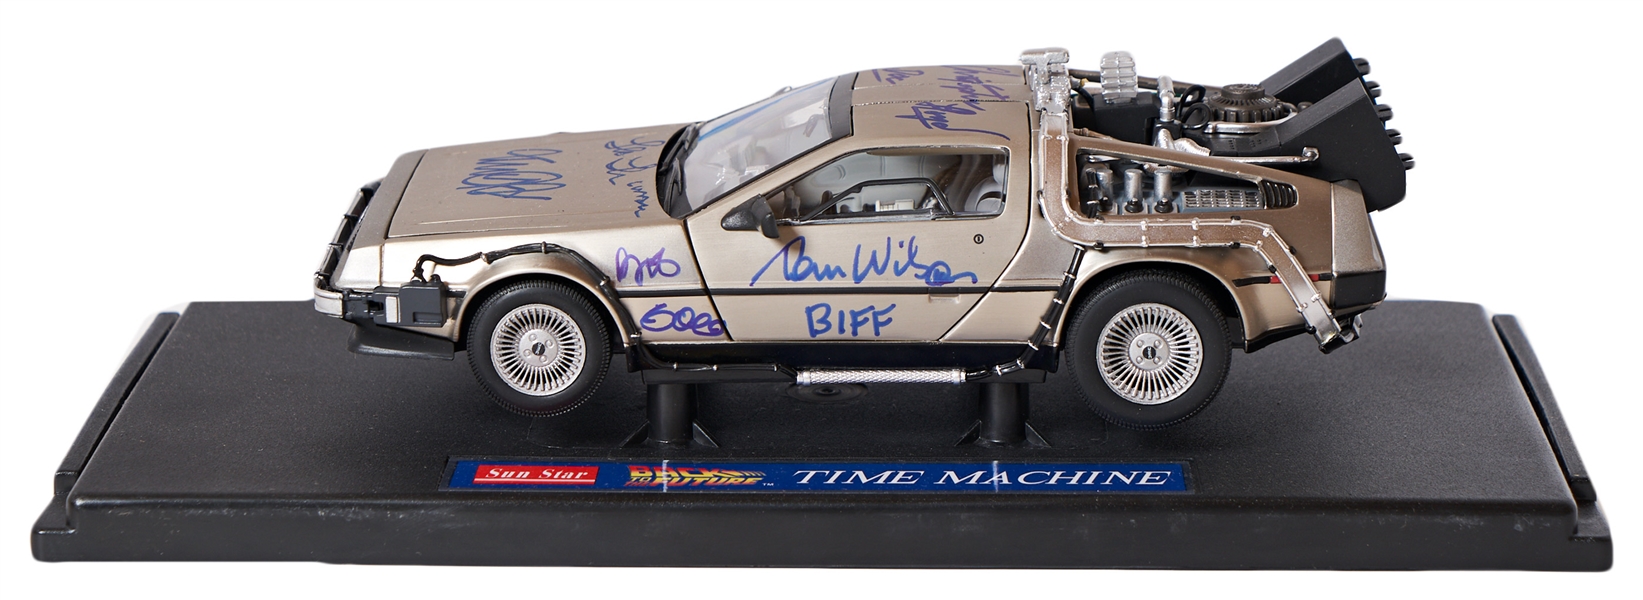 ''Back to the Future'' Cast-Signed DeLorean Model Car -- Includes Michael J. Fox's Signature